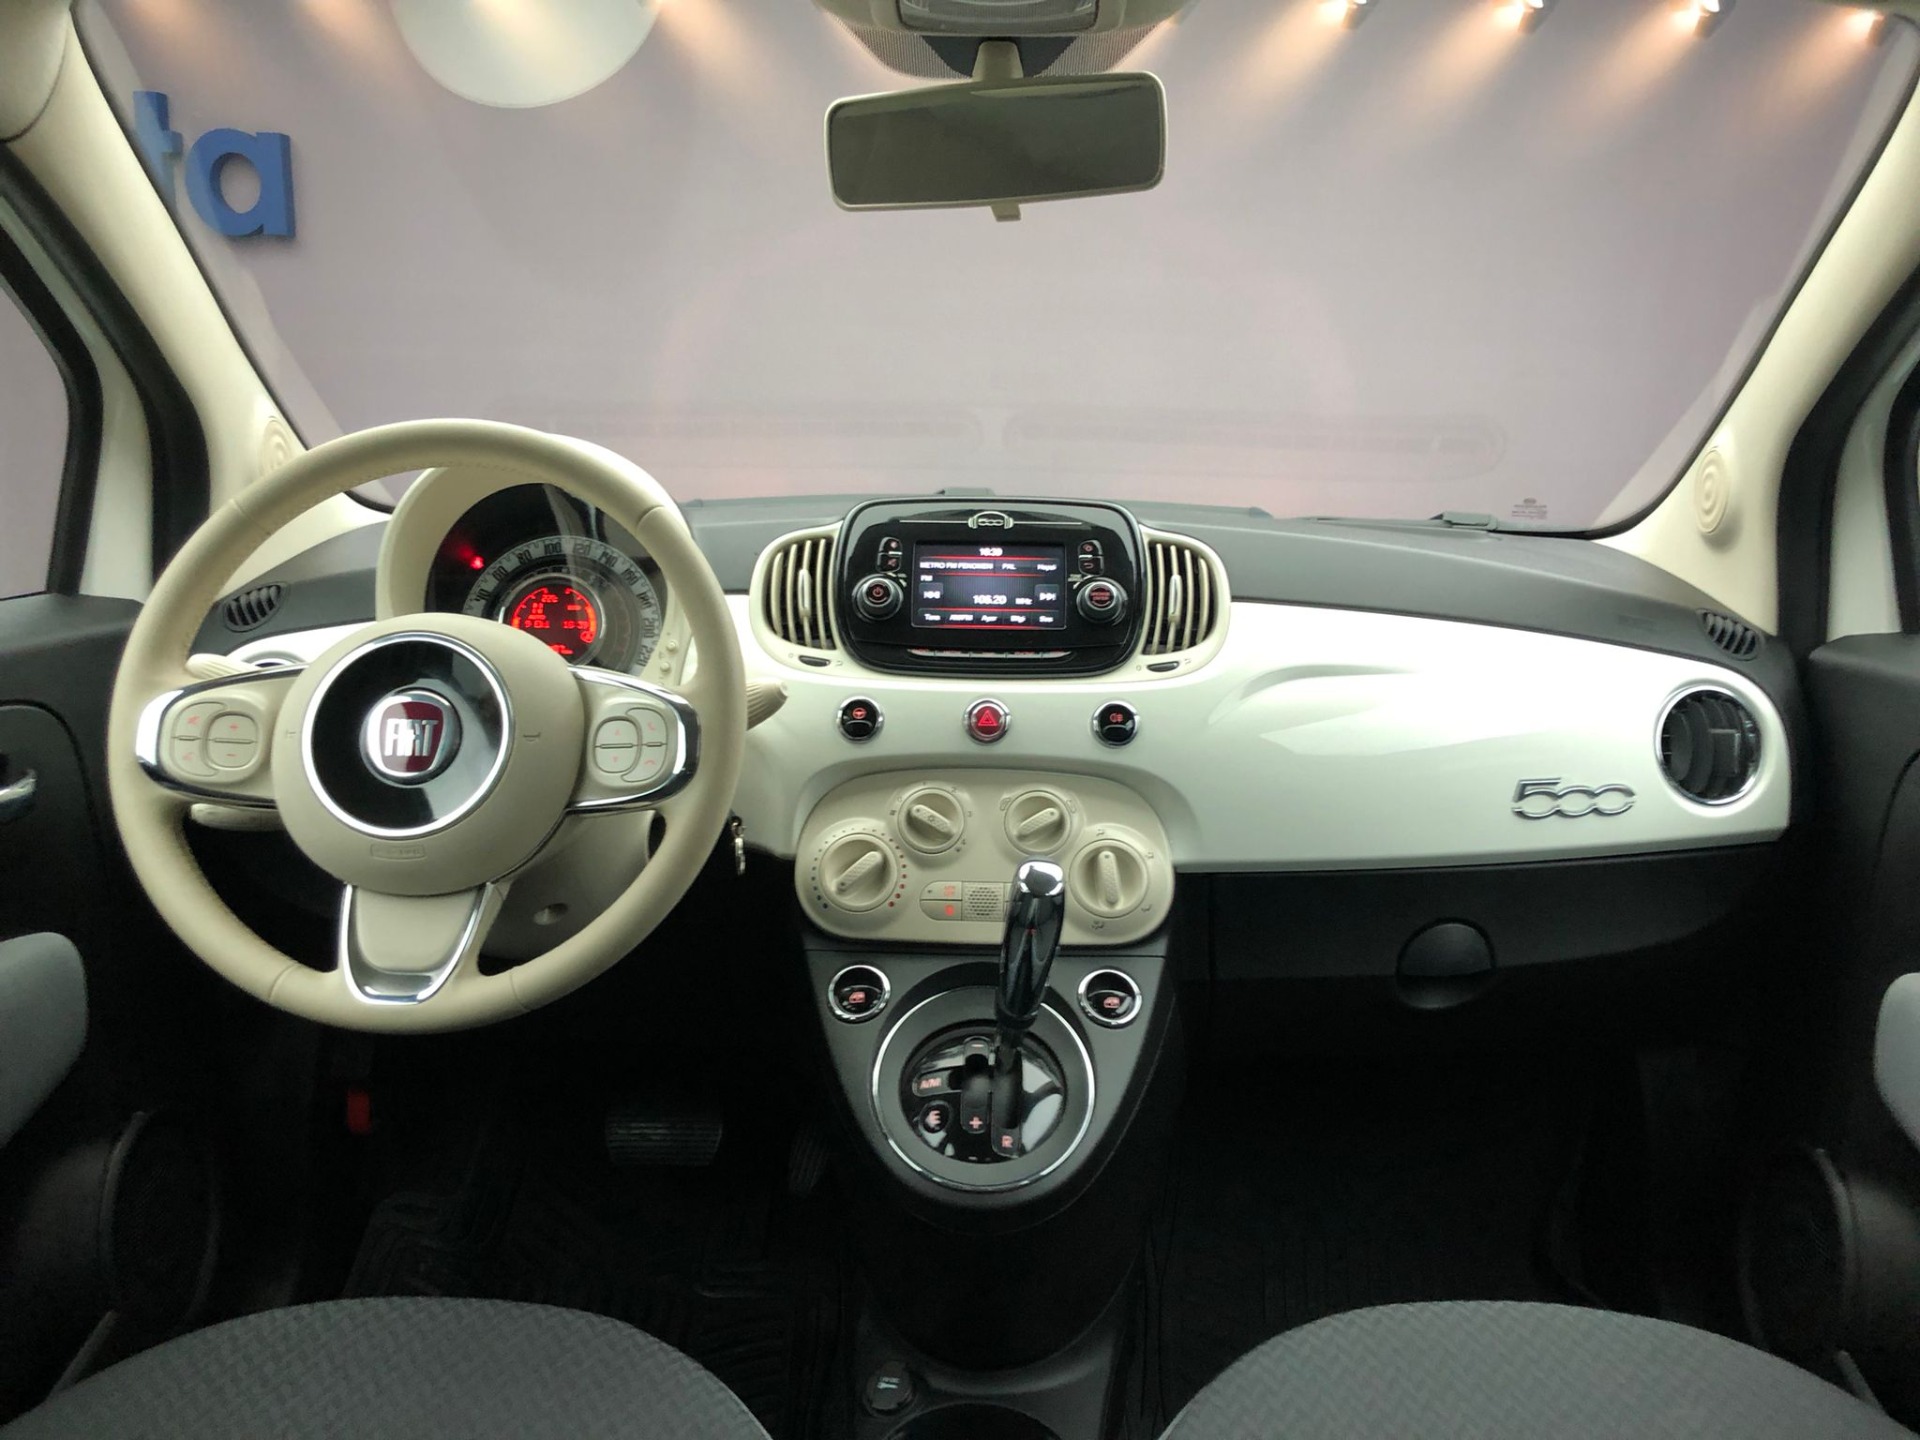 2020 2Bin Km'de Otomatik Boyasız 1.2 Popstar Fiat 500-11